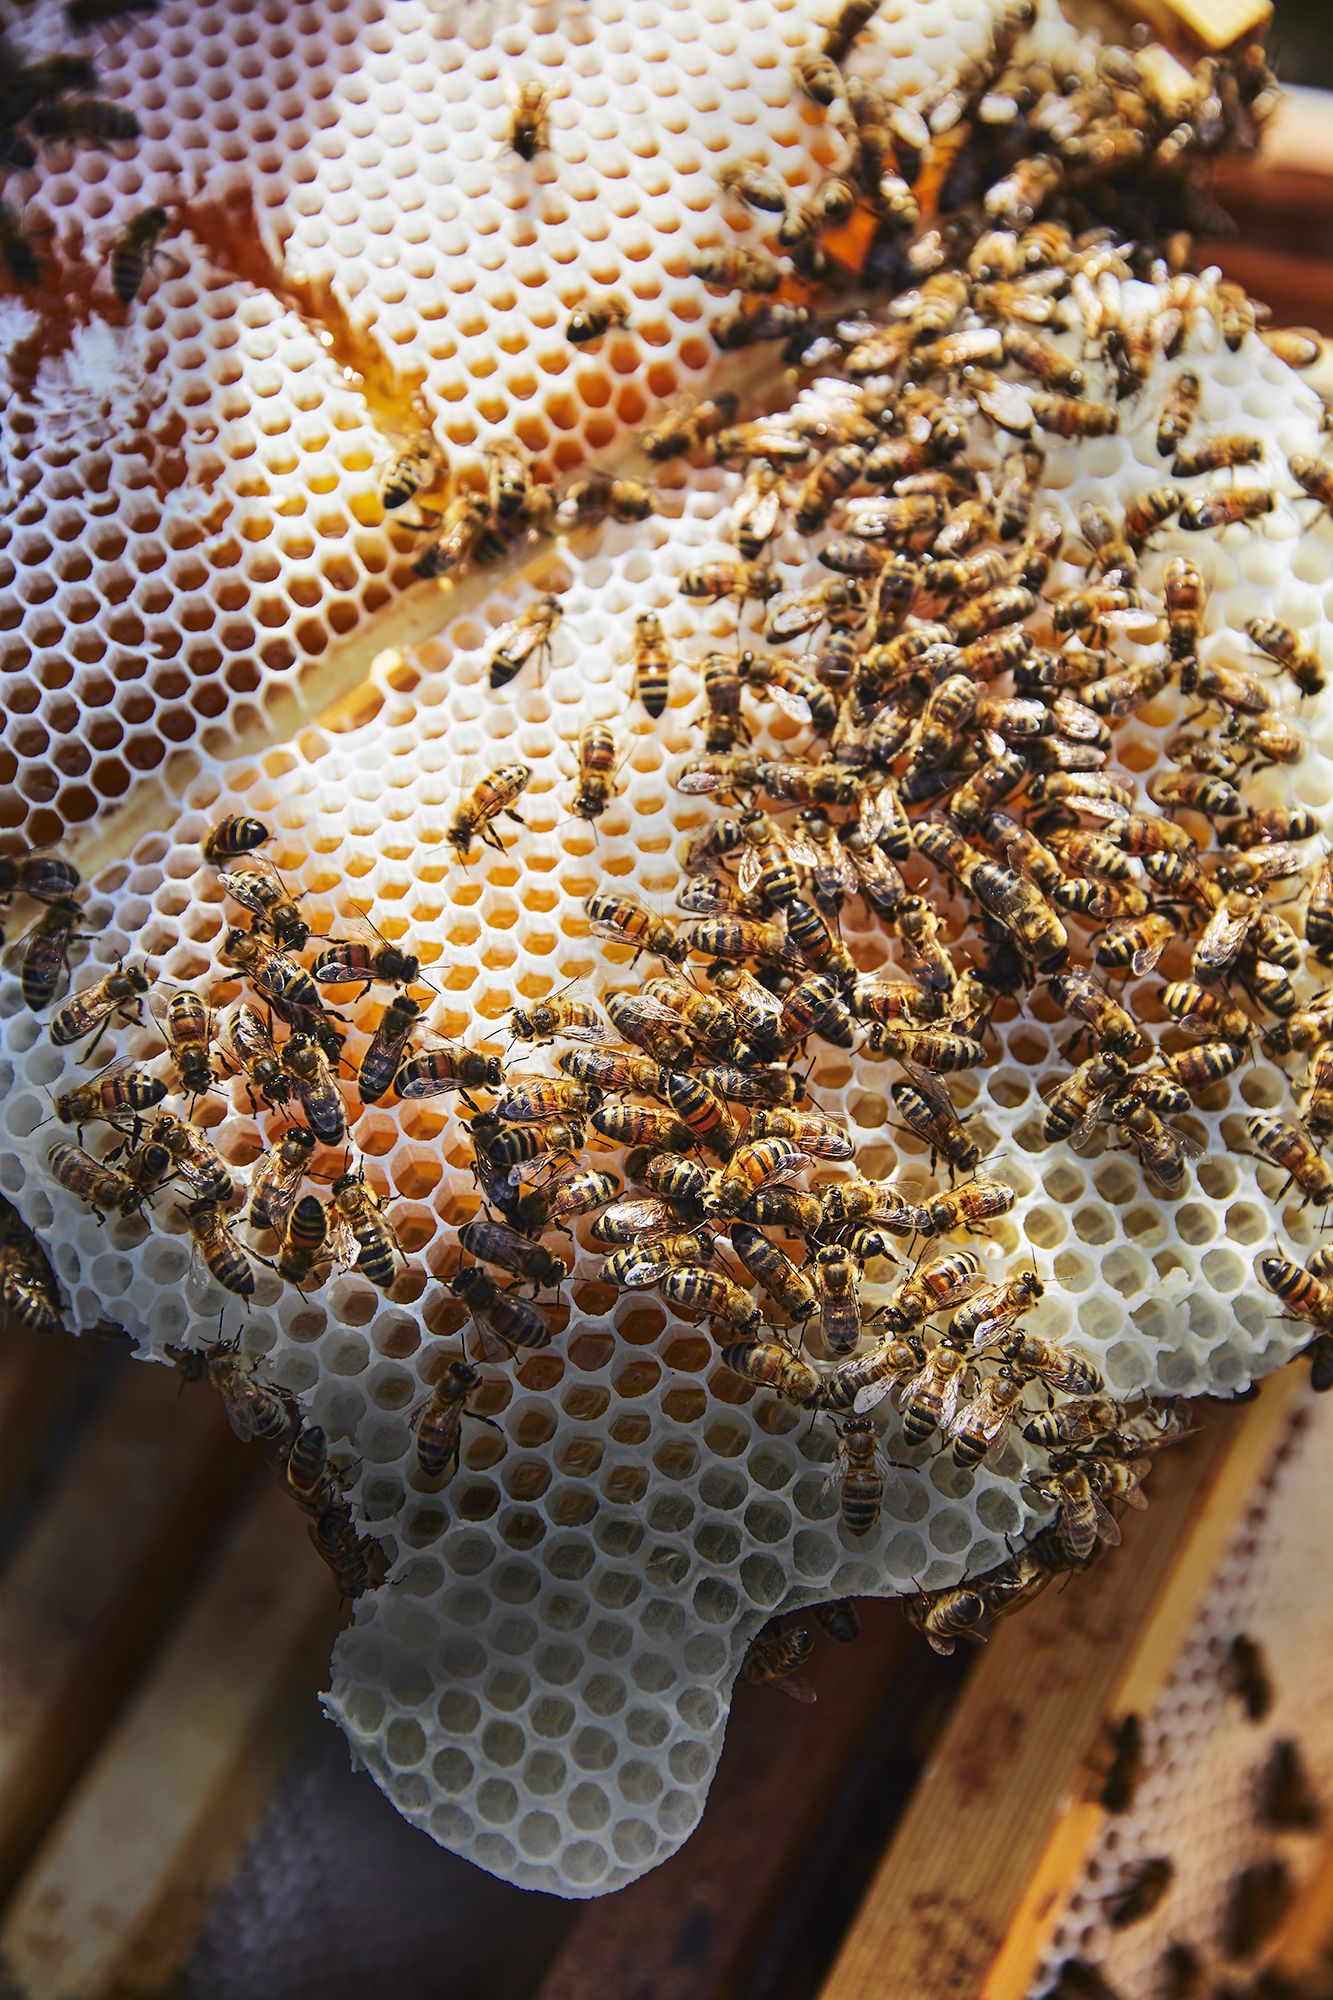 HUNNYBEE Beeswax Pellets 1LB, 100% Organic Bees Wax for DIY